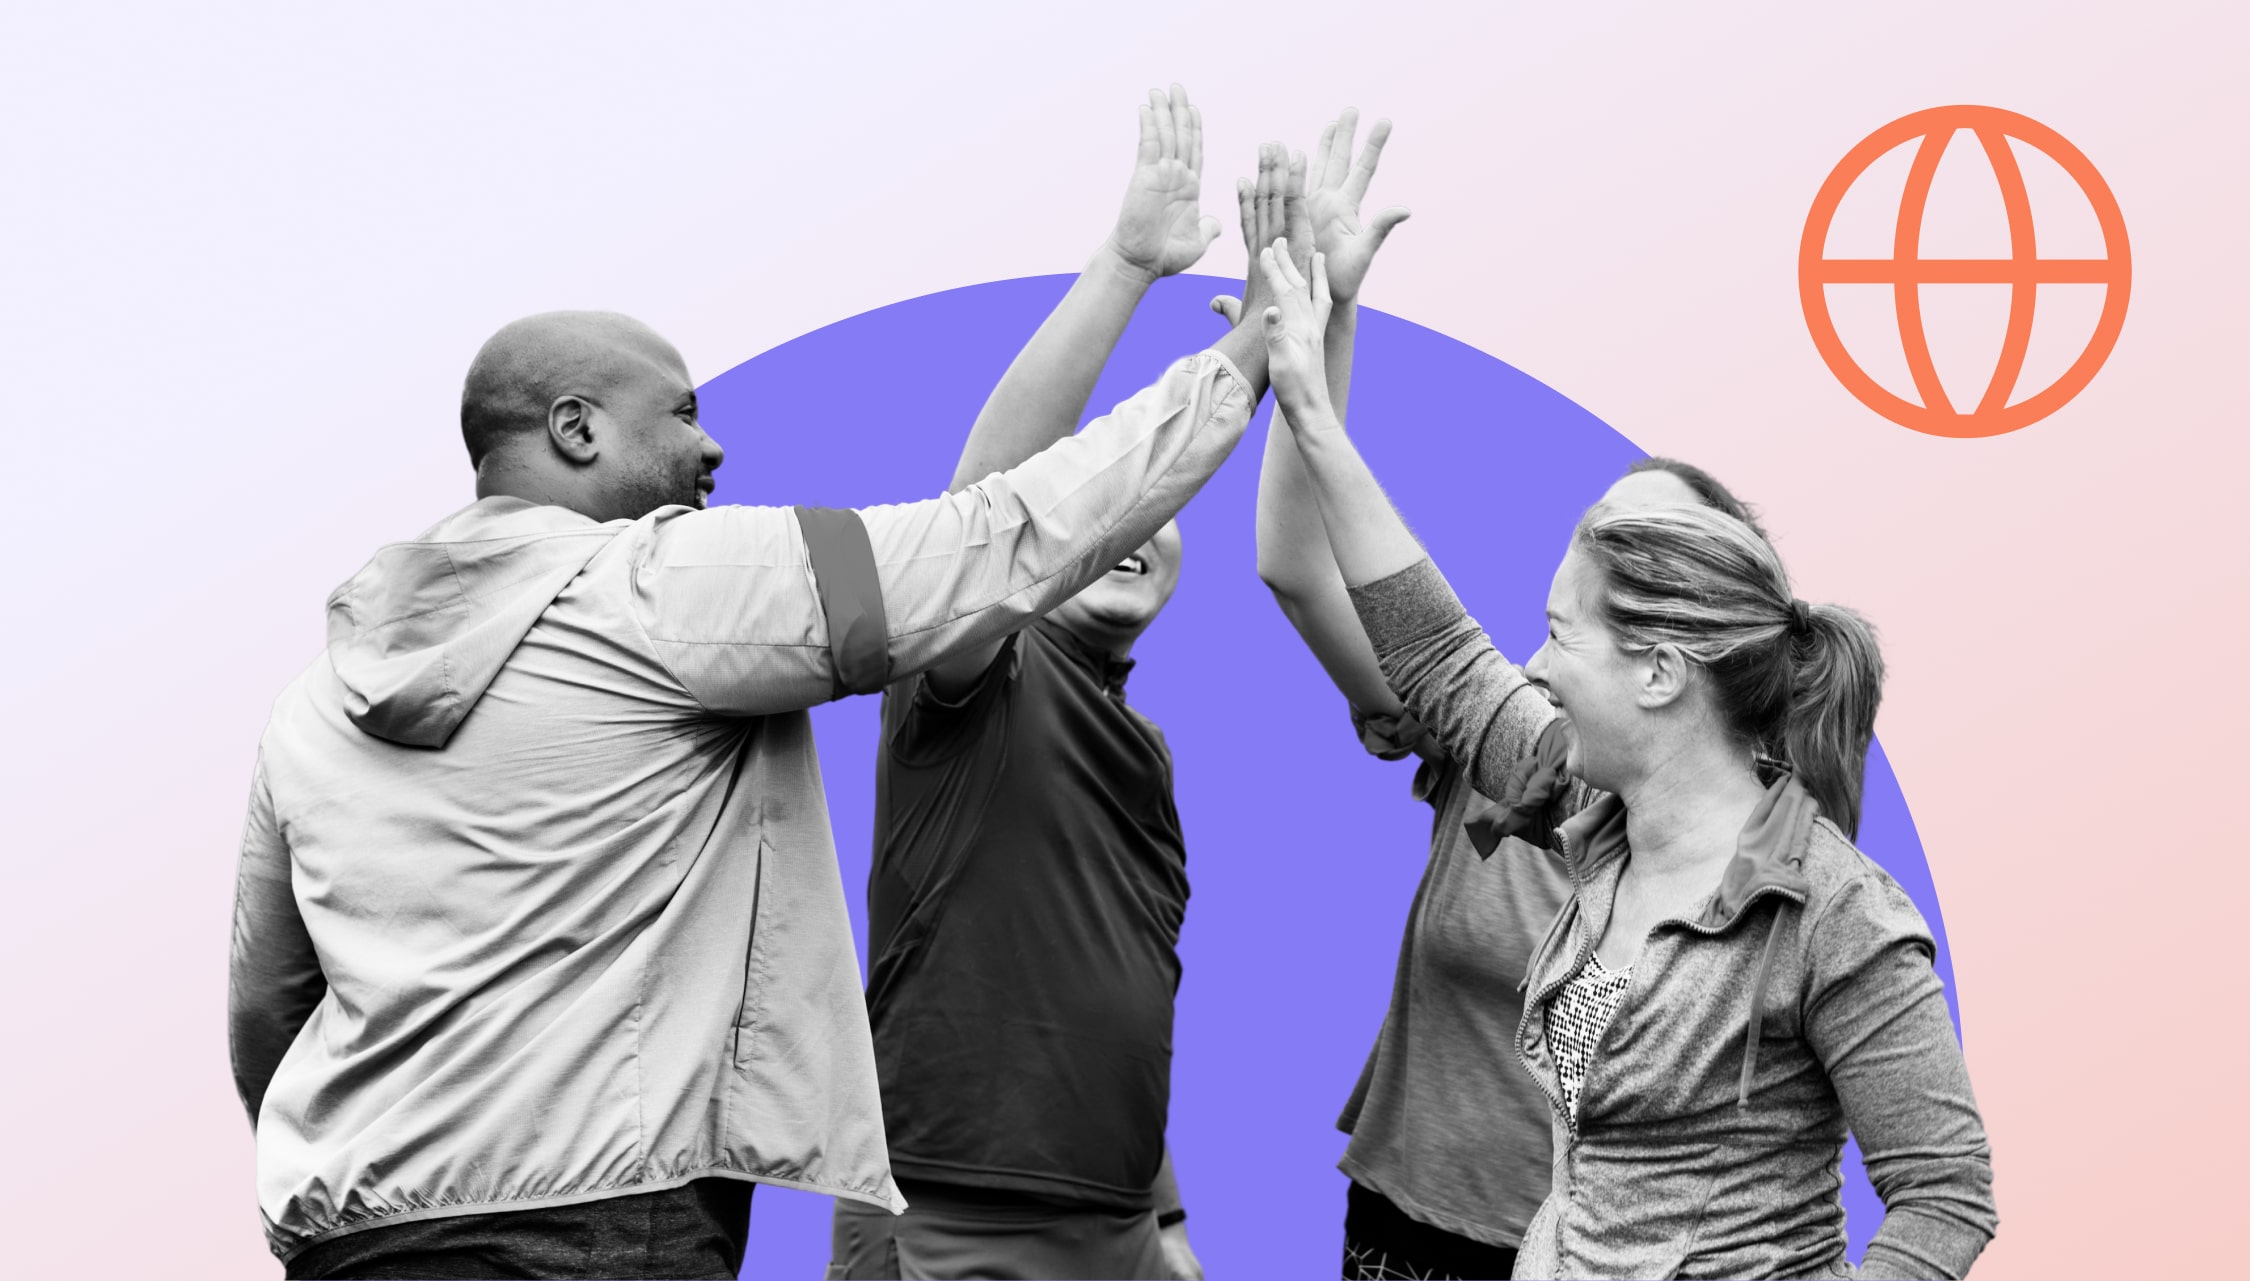 Schwarz-weiß Bild von jeweils zwei Frauen und Männer, die sich gleichzeitig ein High-five geben, um ihre gemeinsam starke Bereitschaft bei mission-driven Projekte zu signalisieren.